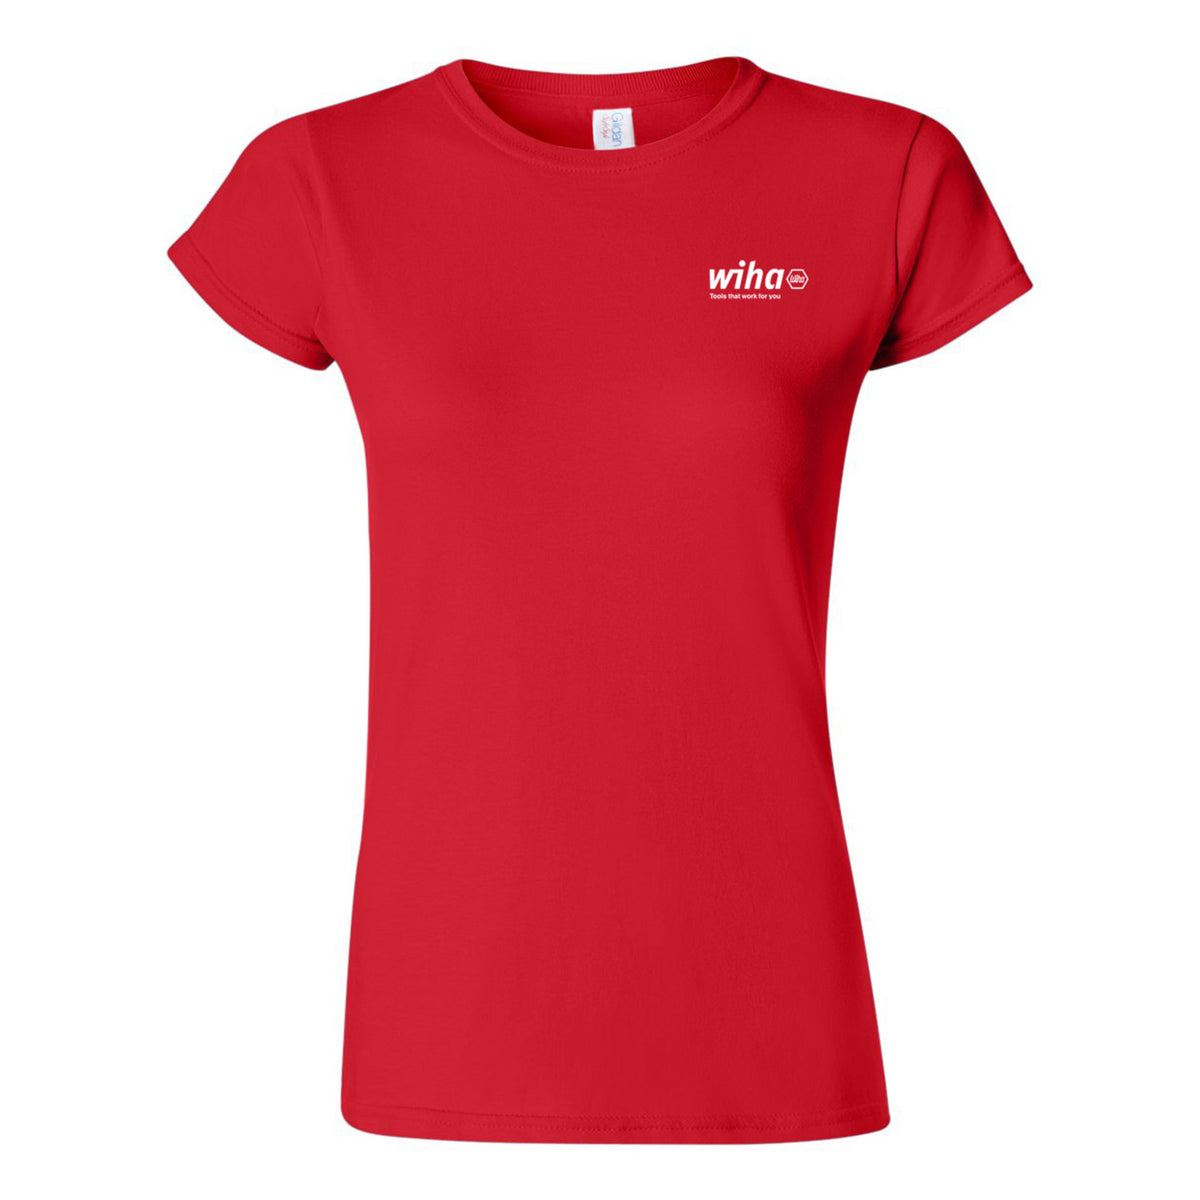 Wiha 91620 Wiha Women's T-shirt Red Small